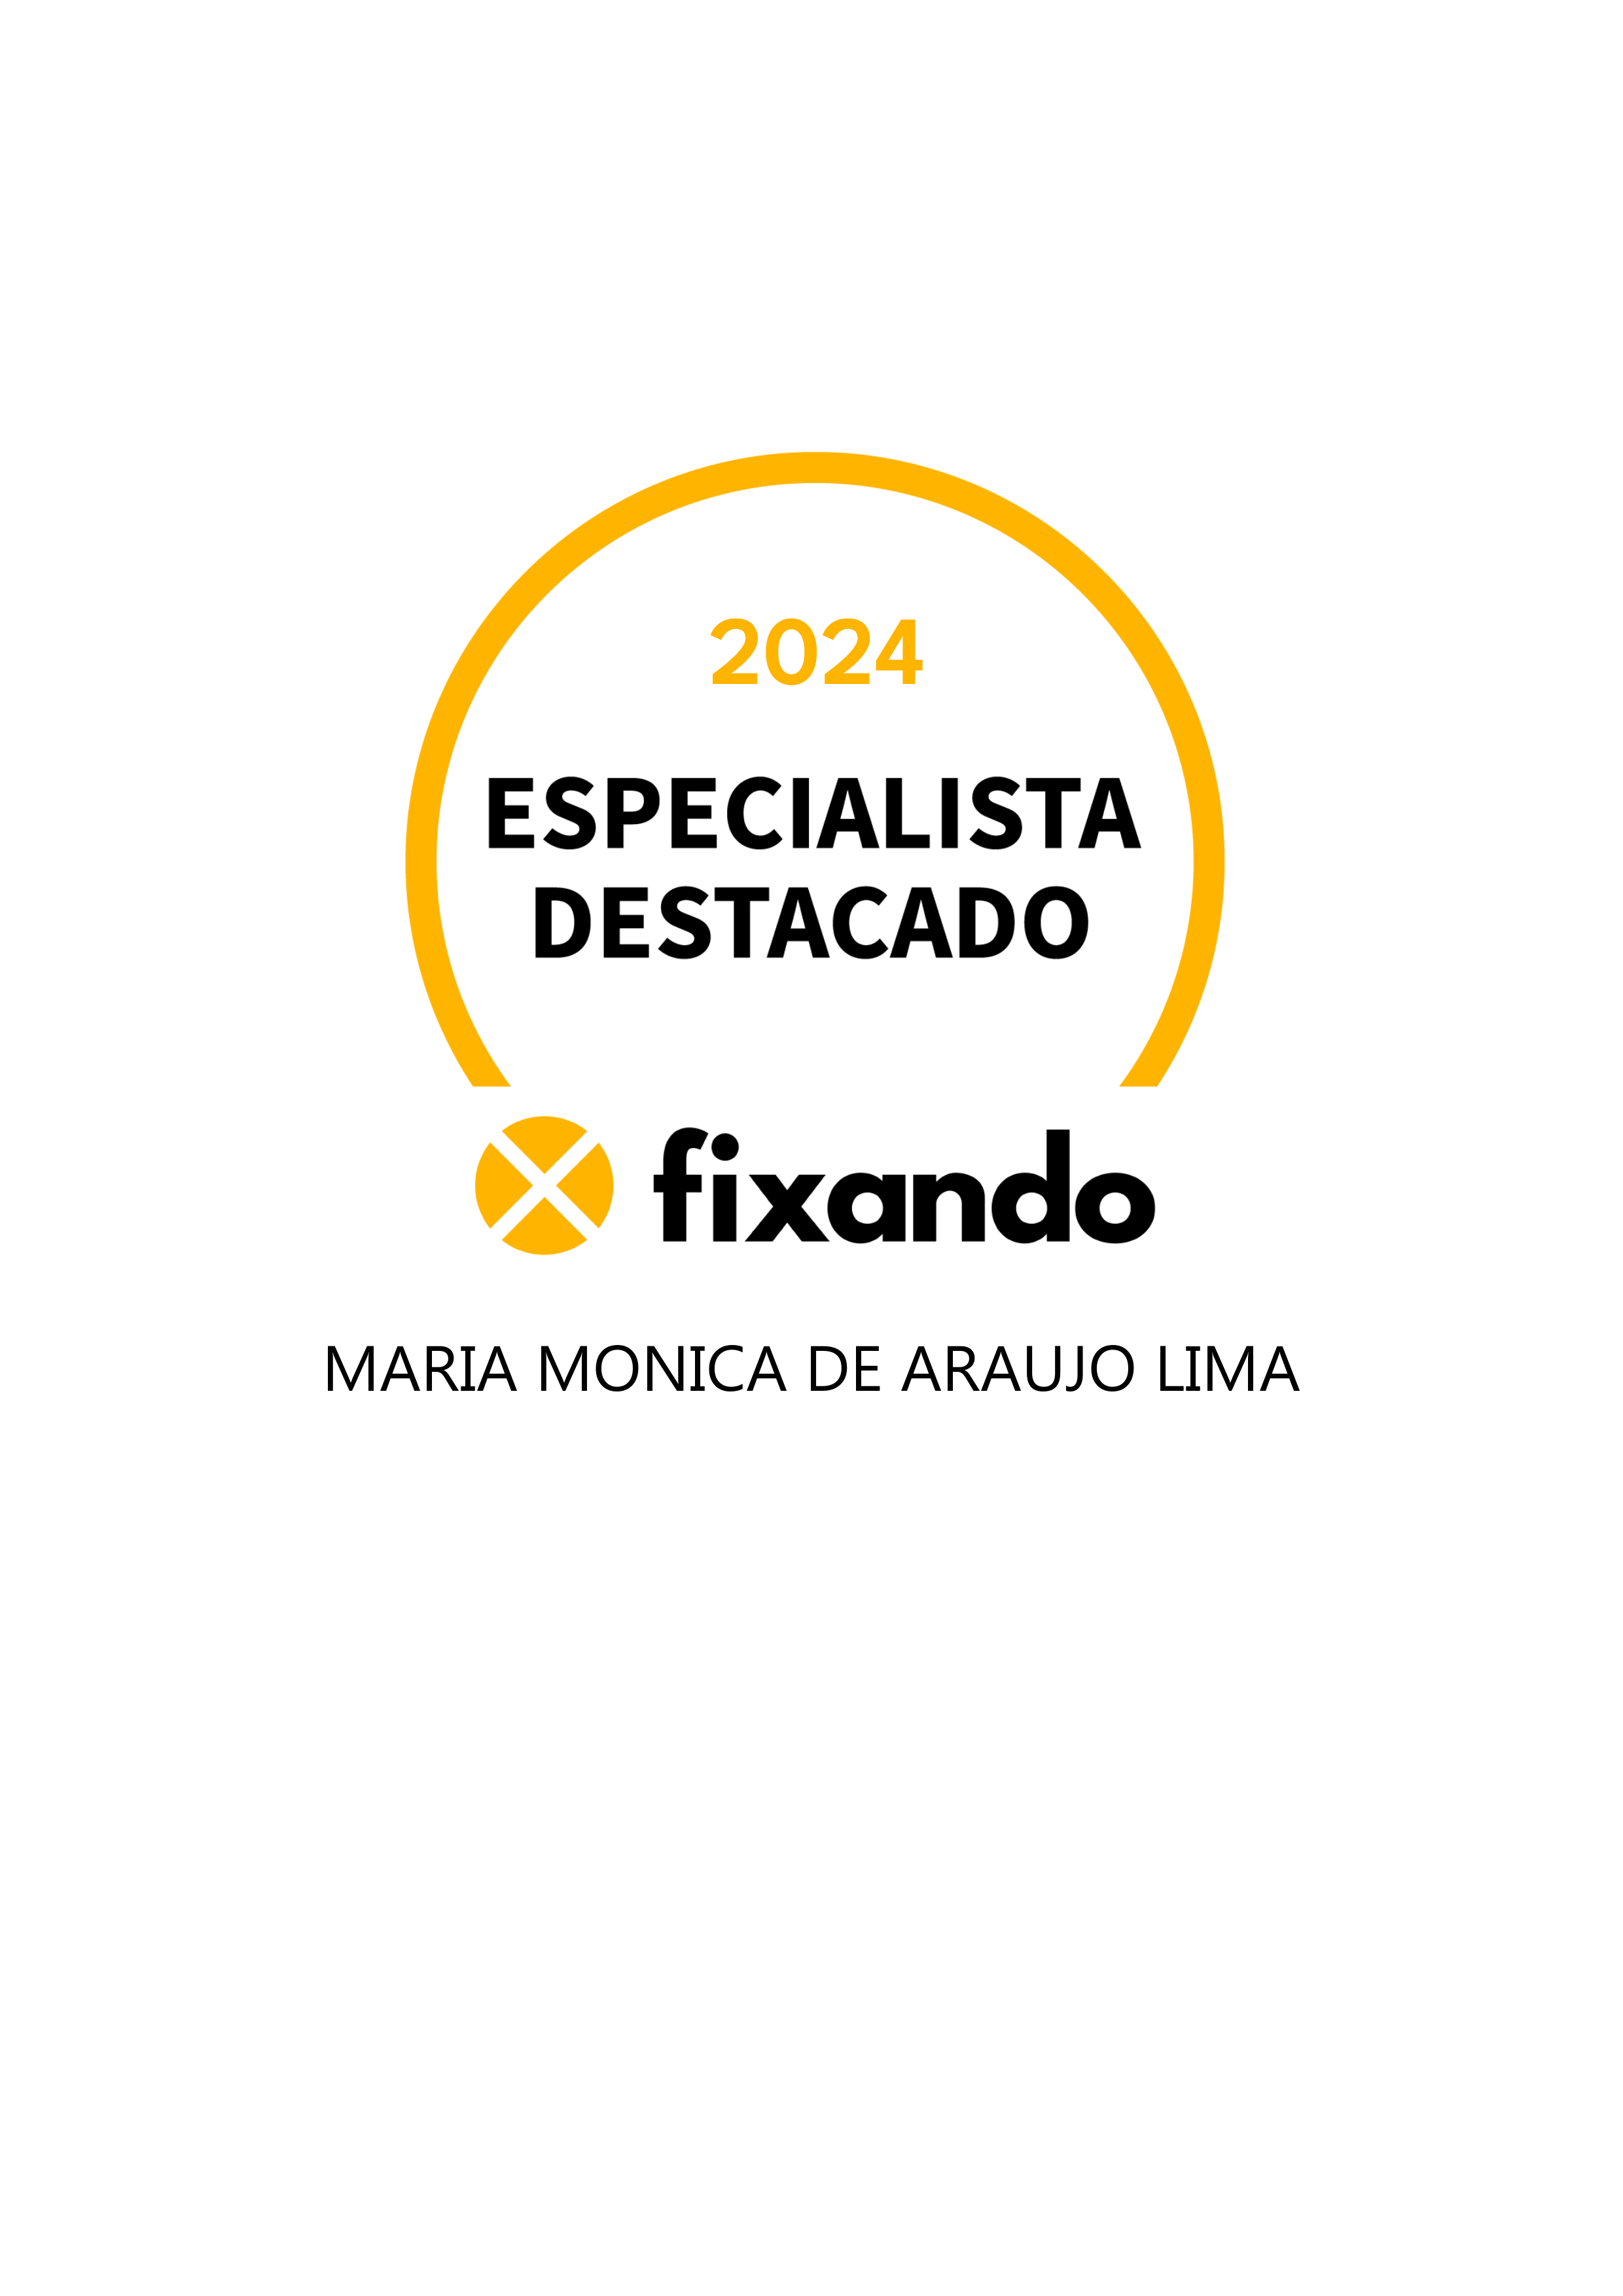 Maria Monica de Araujo Lima - Reguengos de Monsaraz - Inspeção de Extintores